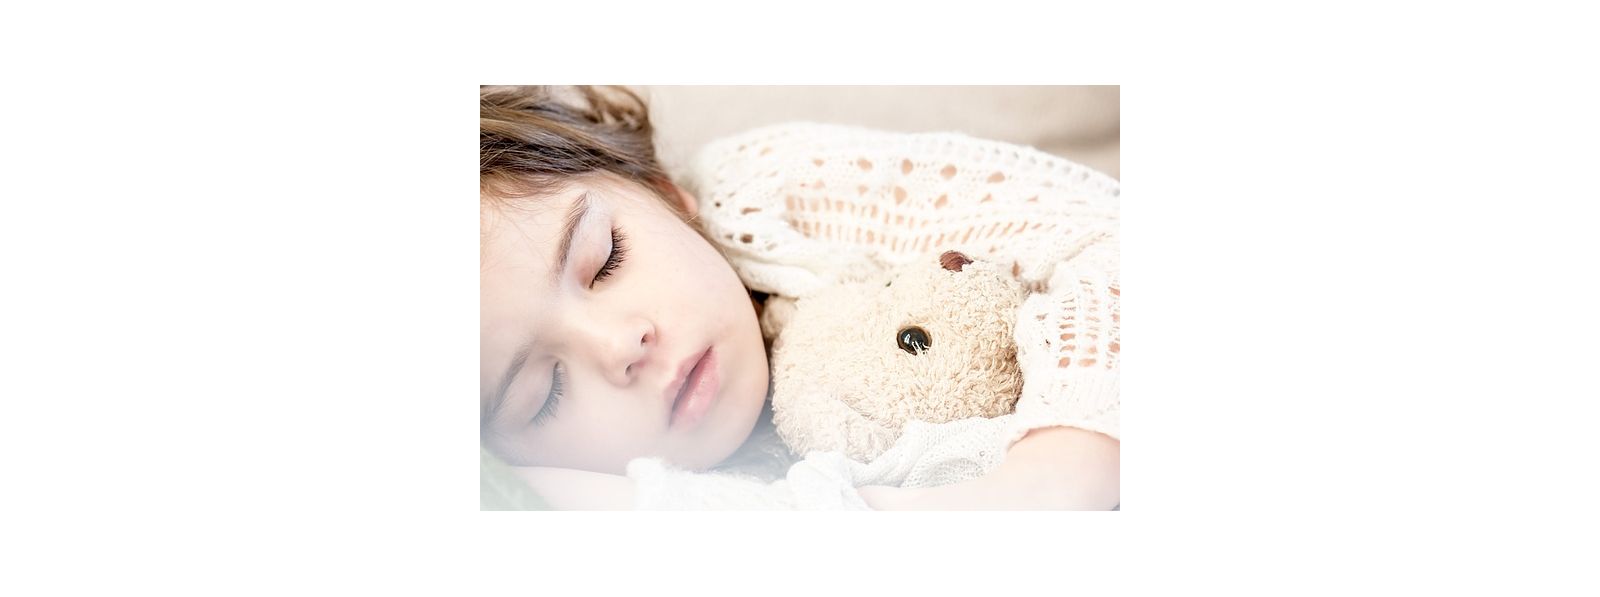 Jak pomóc dziecku z zasypianiem?